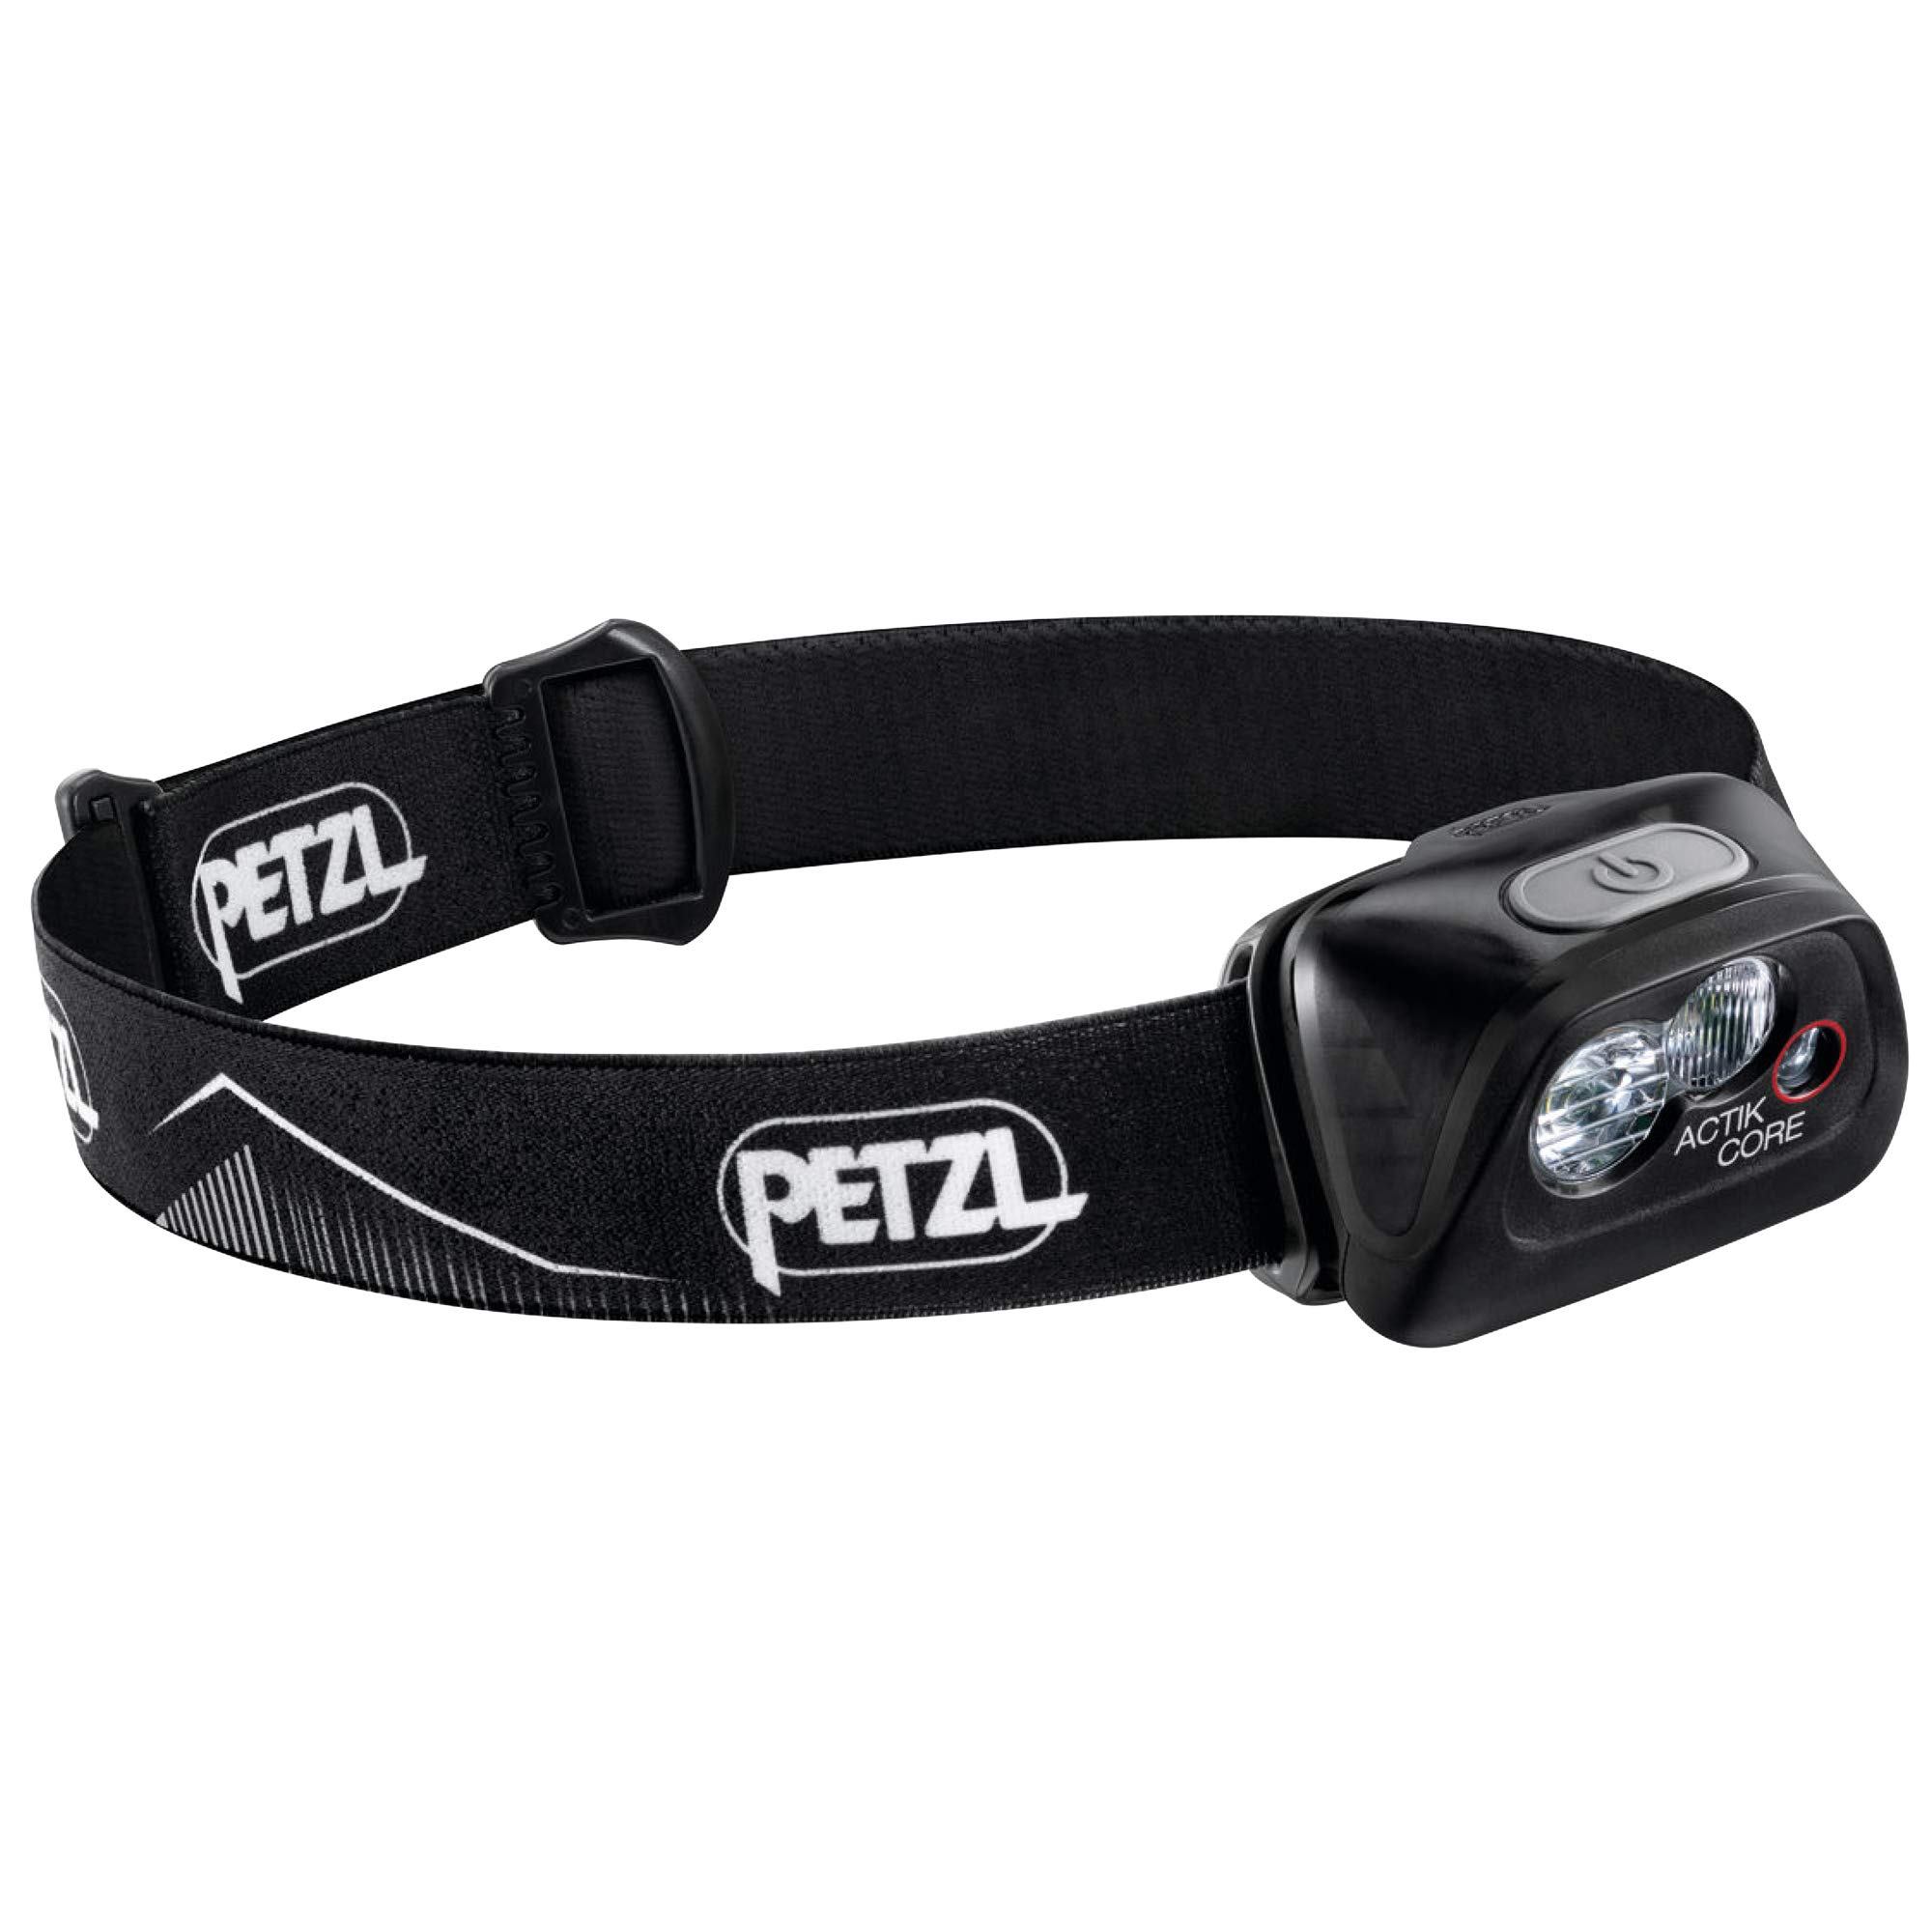 Petzl ACTIK CORE 头灯 - 强大的可充电 600 流明灯，带红色照明，适合远足、登山和露营